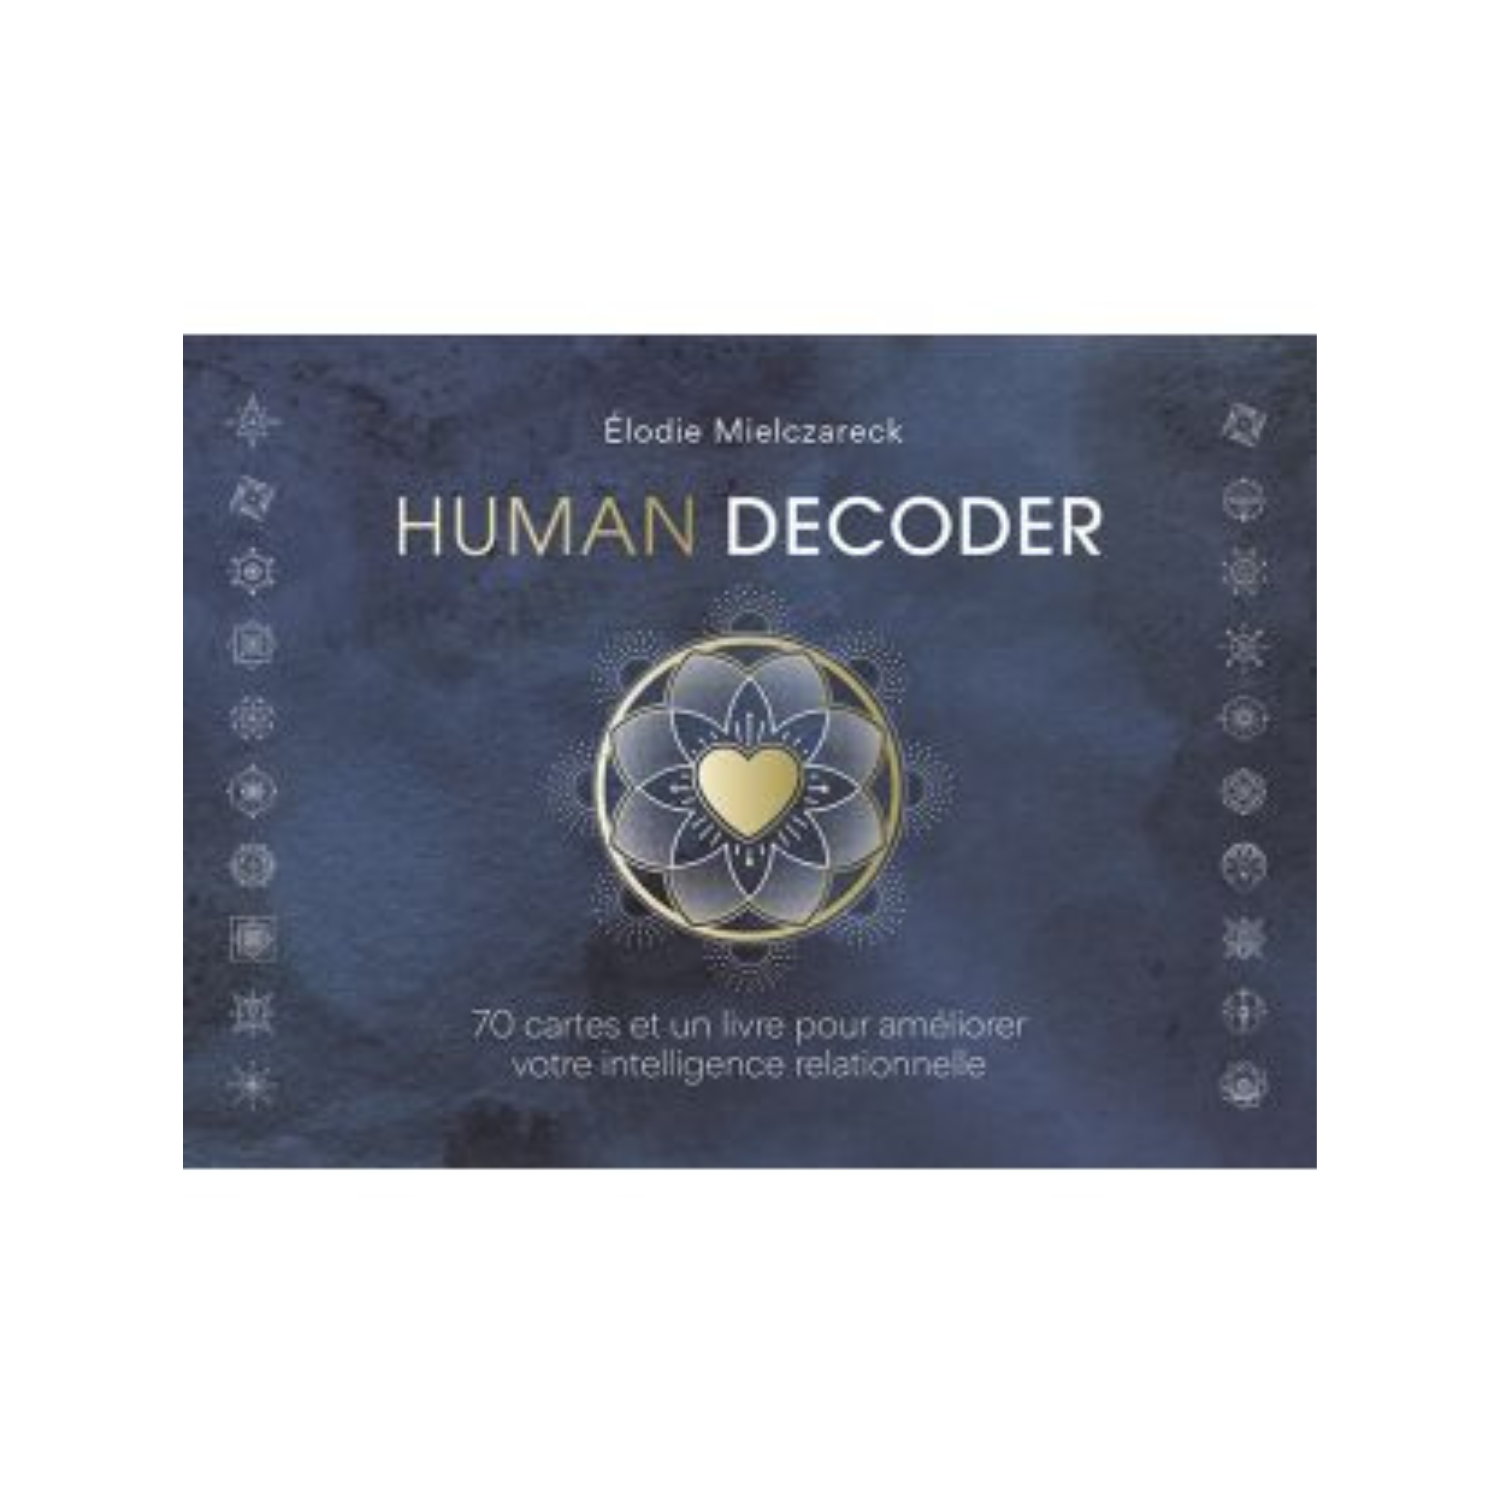 Human Decoder